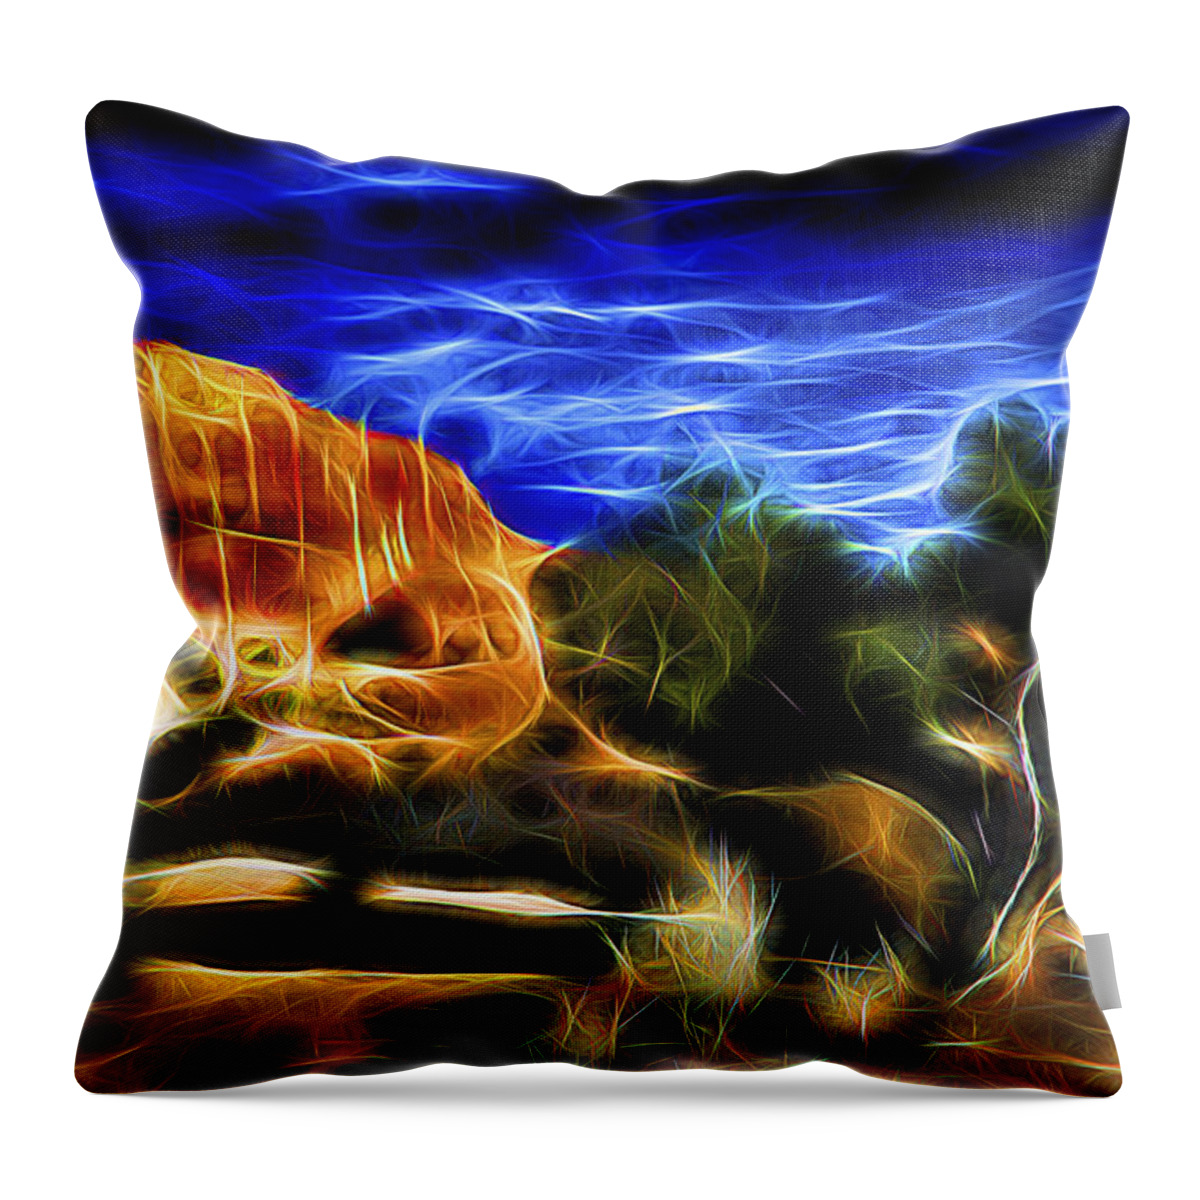 Nature Throw Pillow featuring the digital art Desert Garden 3 by William Horden